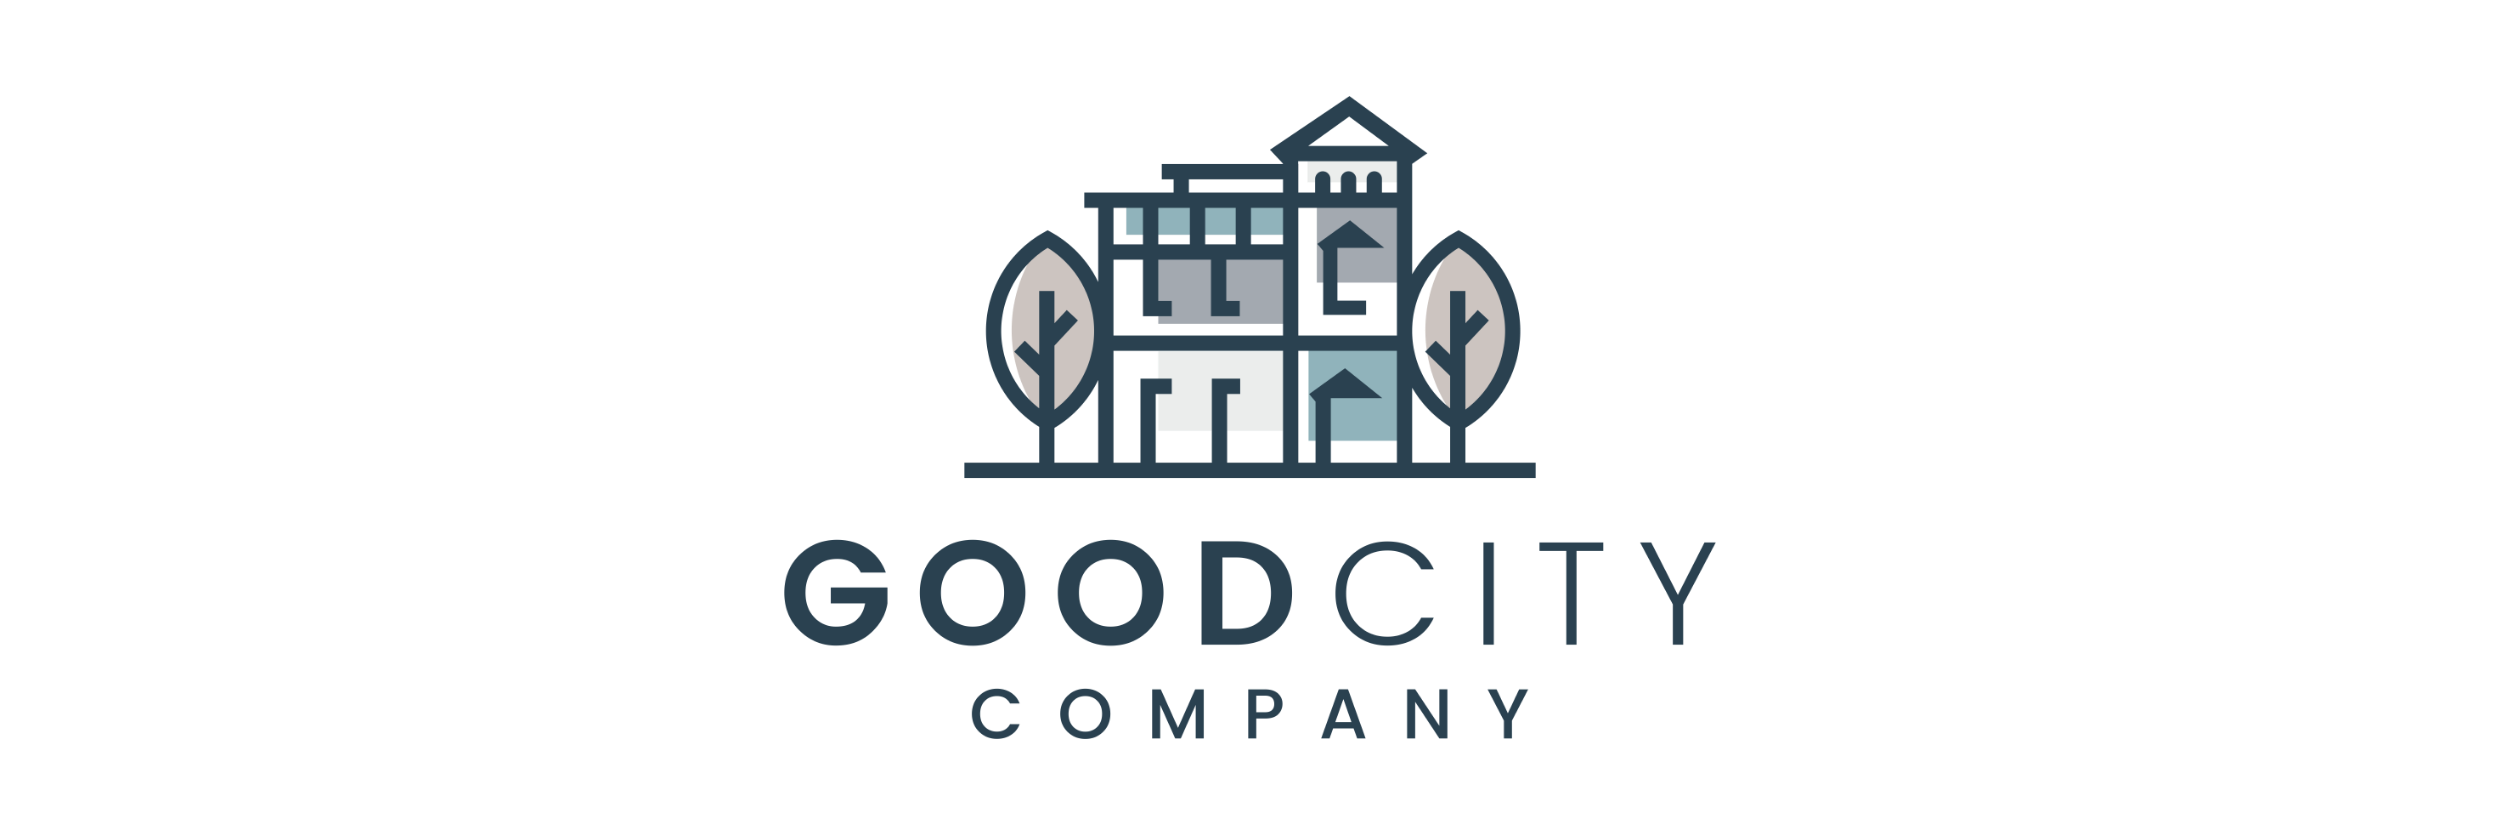 Good City Company